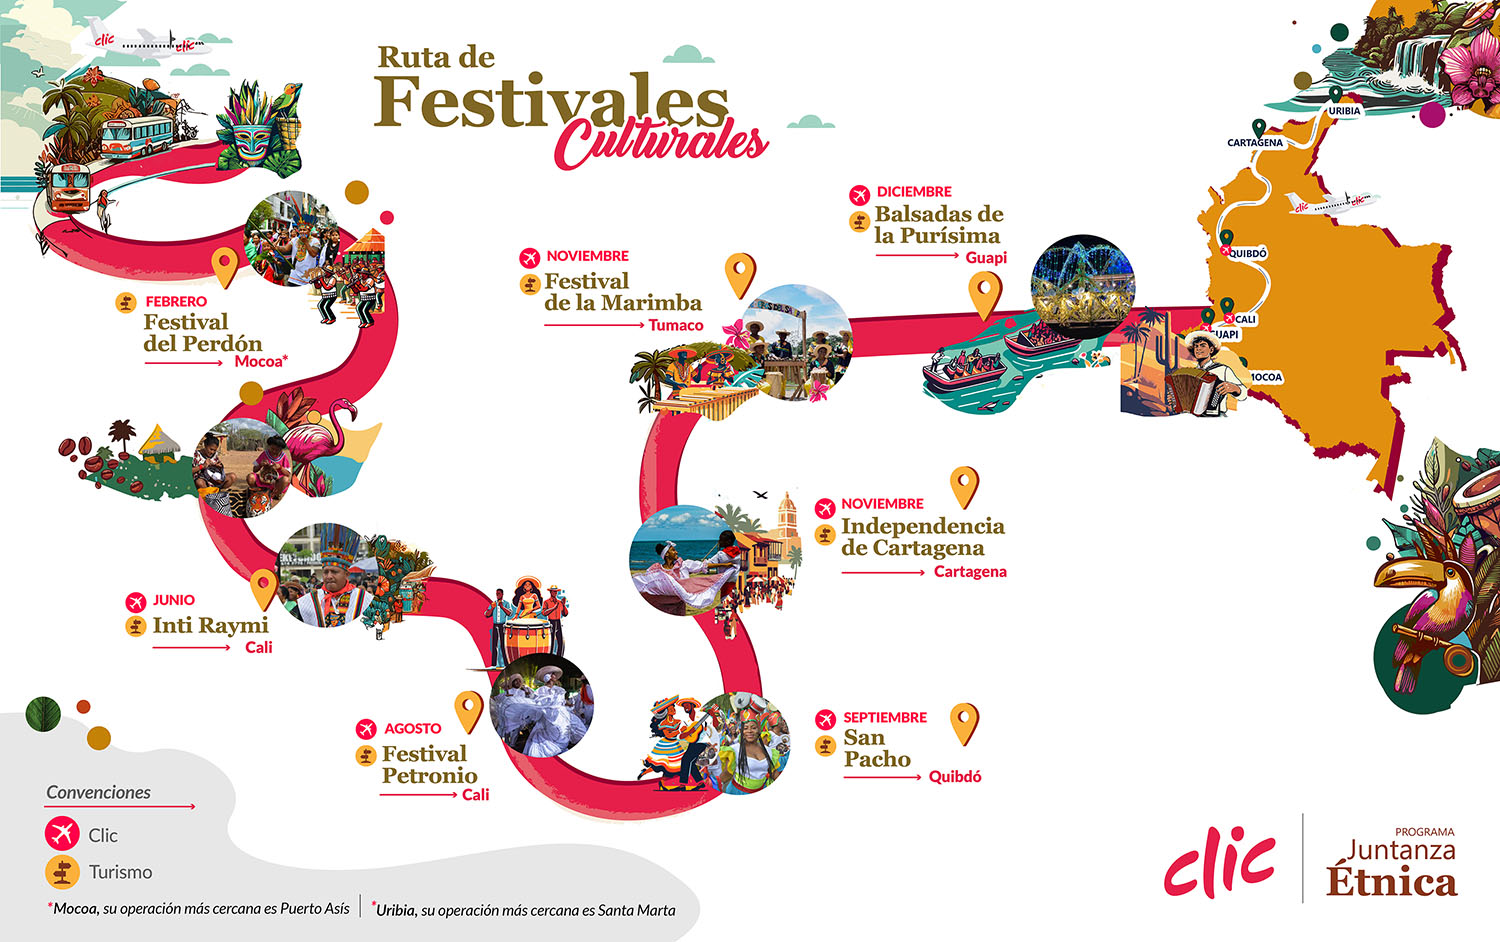 Ruta de Festivales Culturales